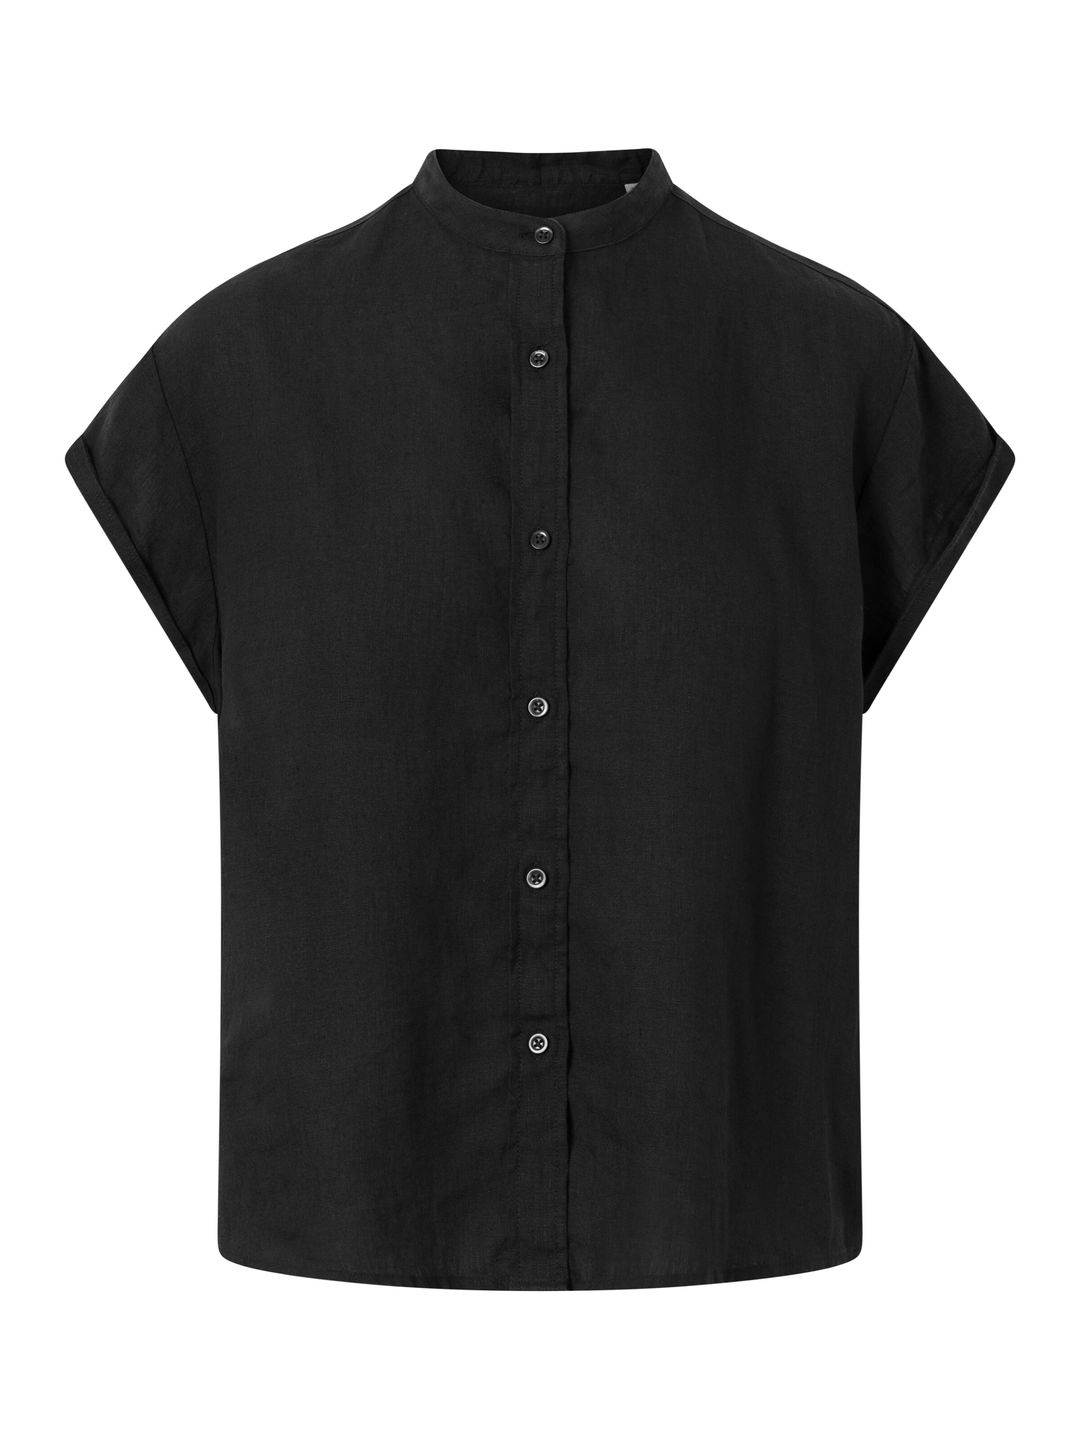 Shirt Collar stand short sleeve Leinen Black Jet von KnowledgeCotton Apparel